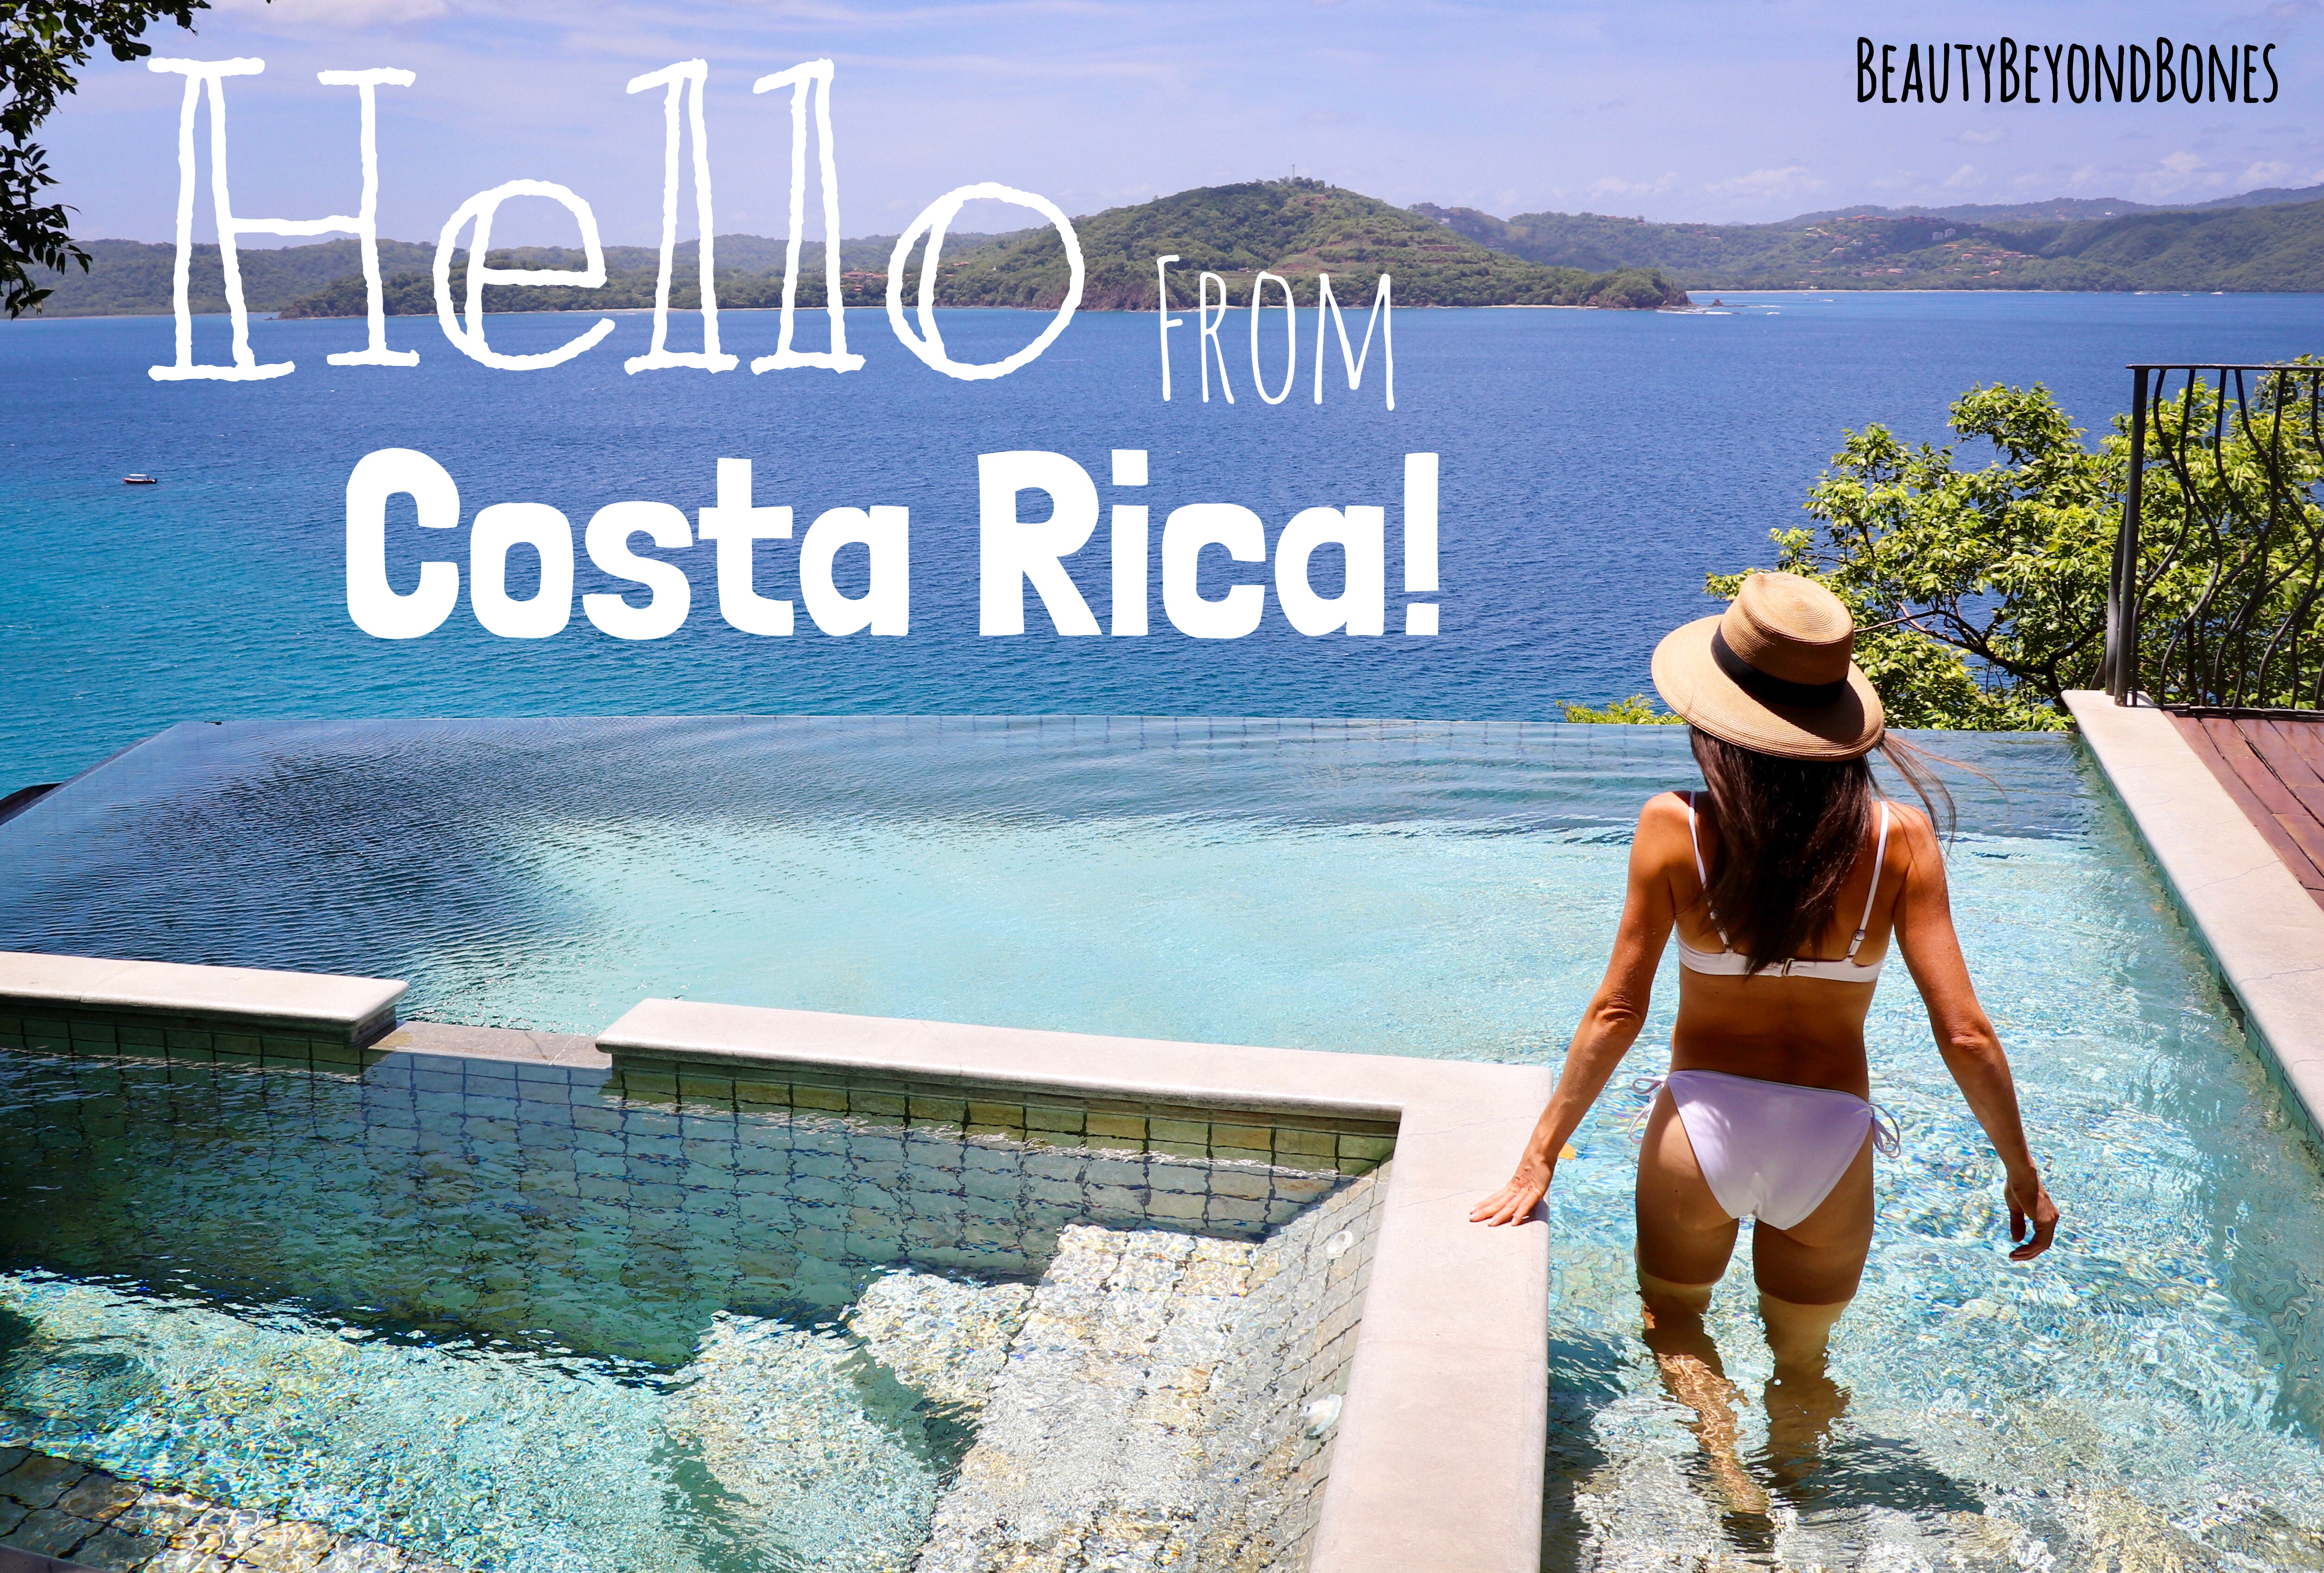 Hello from Costa Rica!